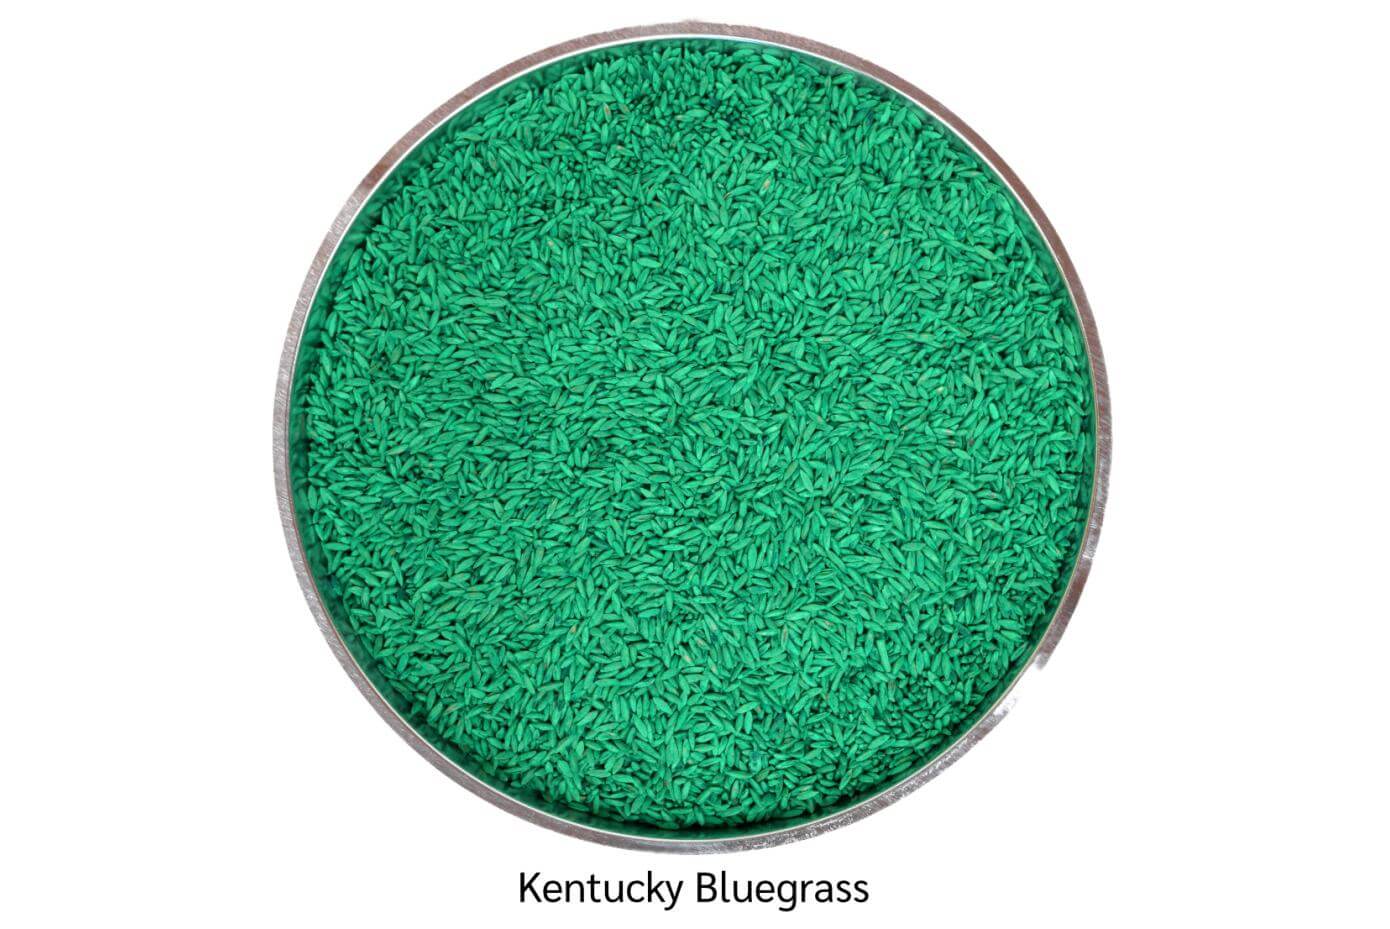 Coated Kentucky Bluegrass seeds